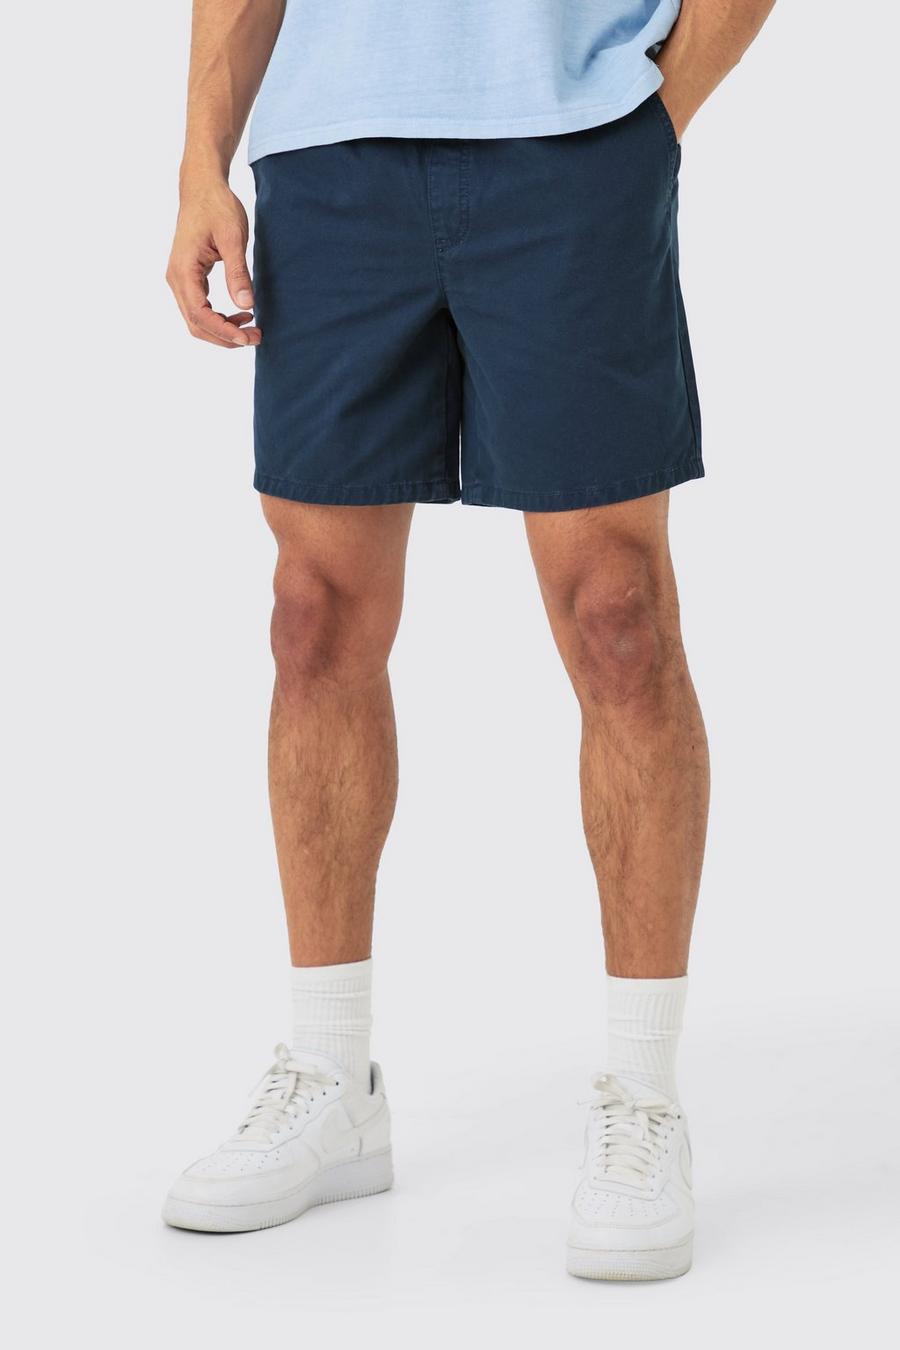 Pantalones cortos holgados Everyday en azul marino, Navy